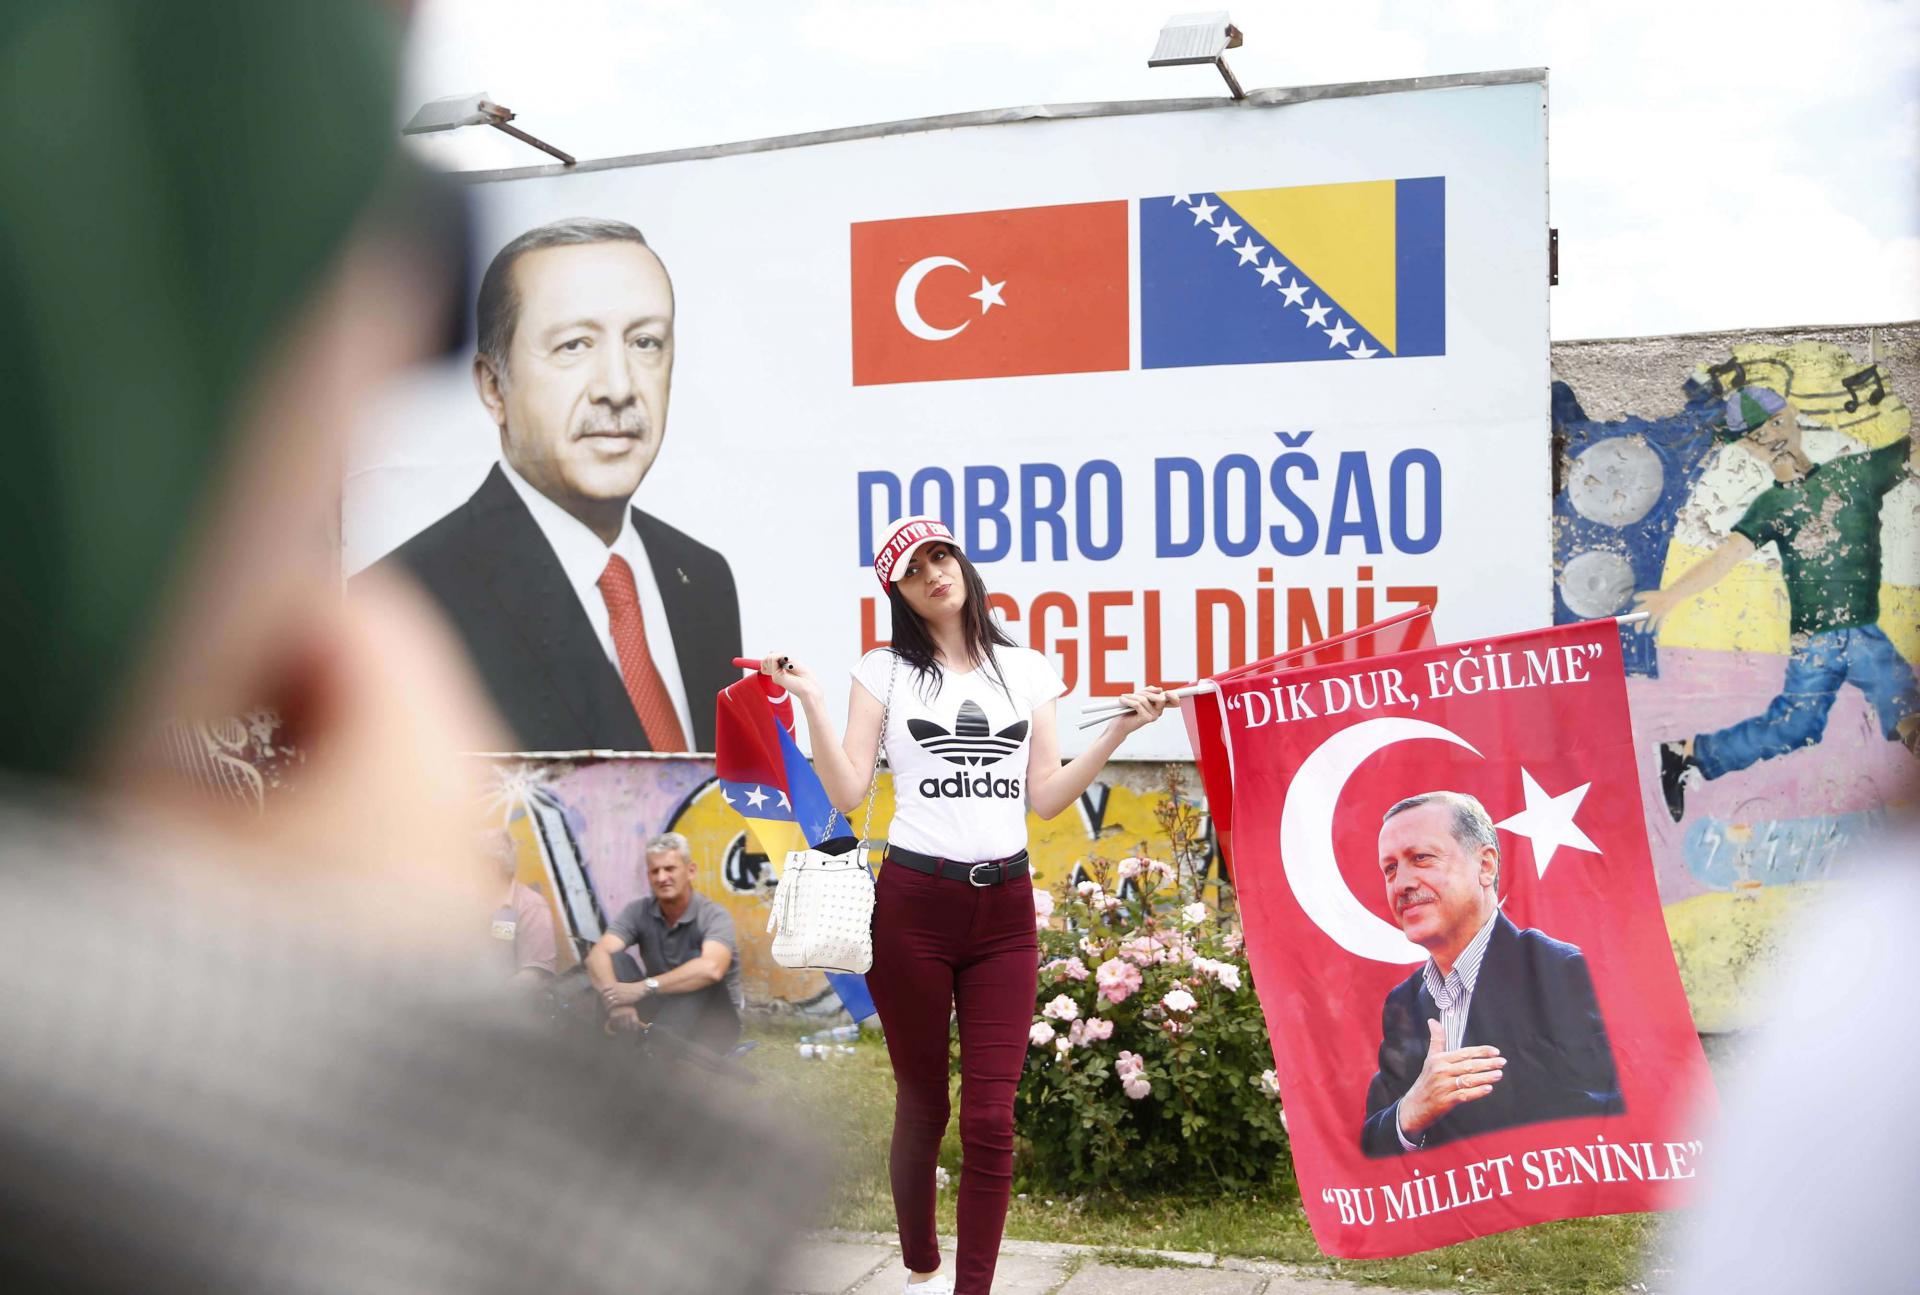 احتفال بعض المناصرين لأردوغان في البوسنة